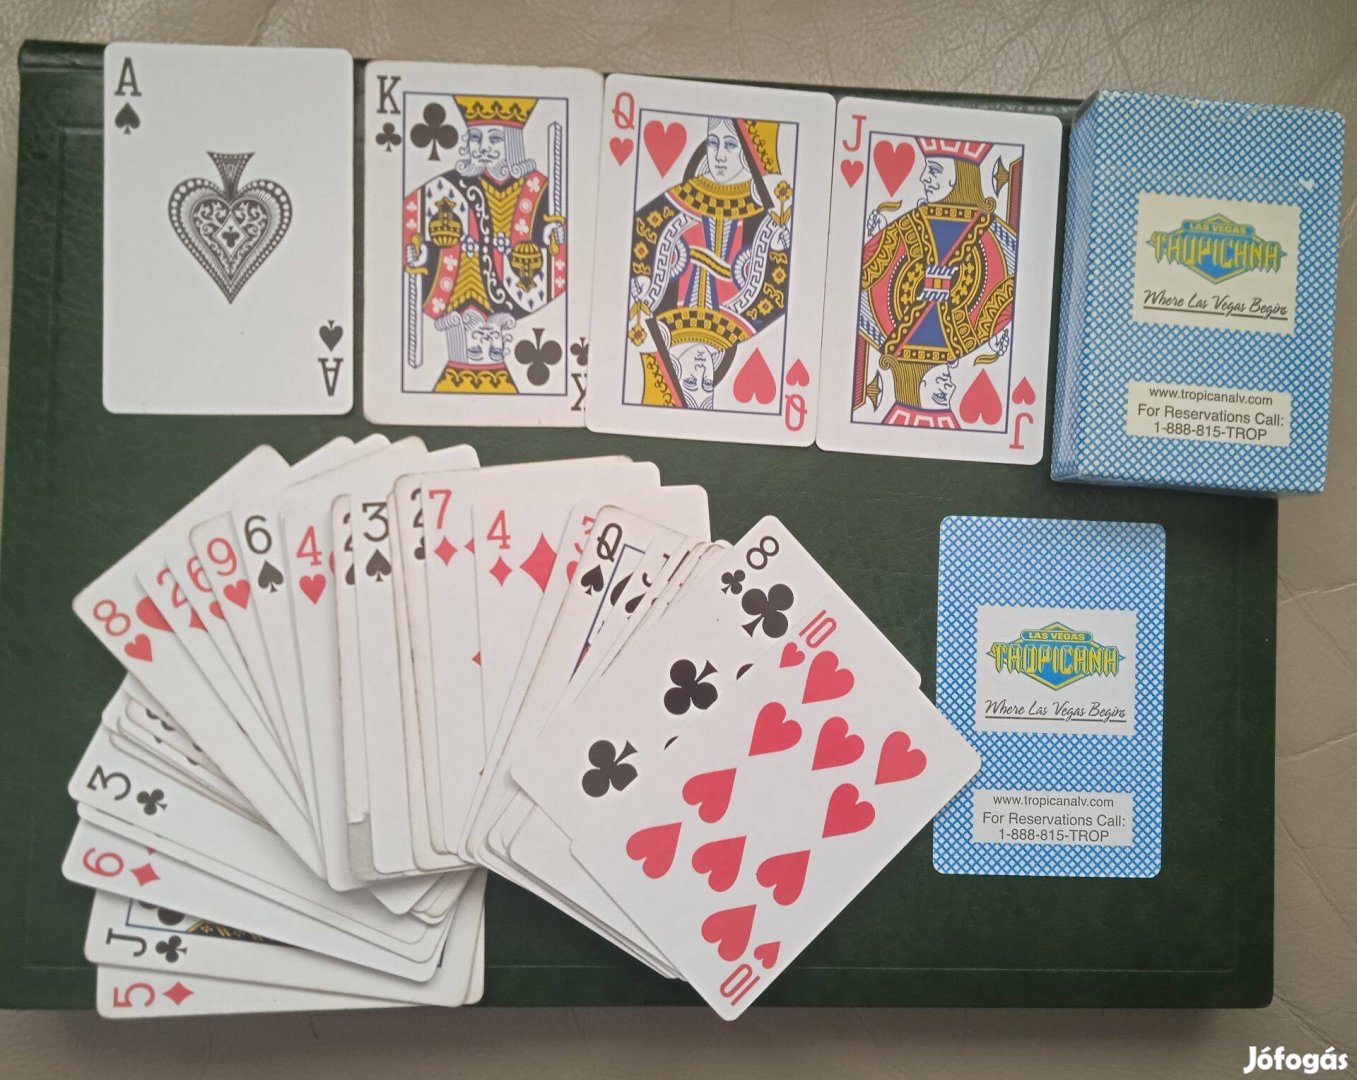 Francia kártya Las Vegas Tropicana póker römi bridge és magyar kártya